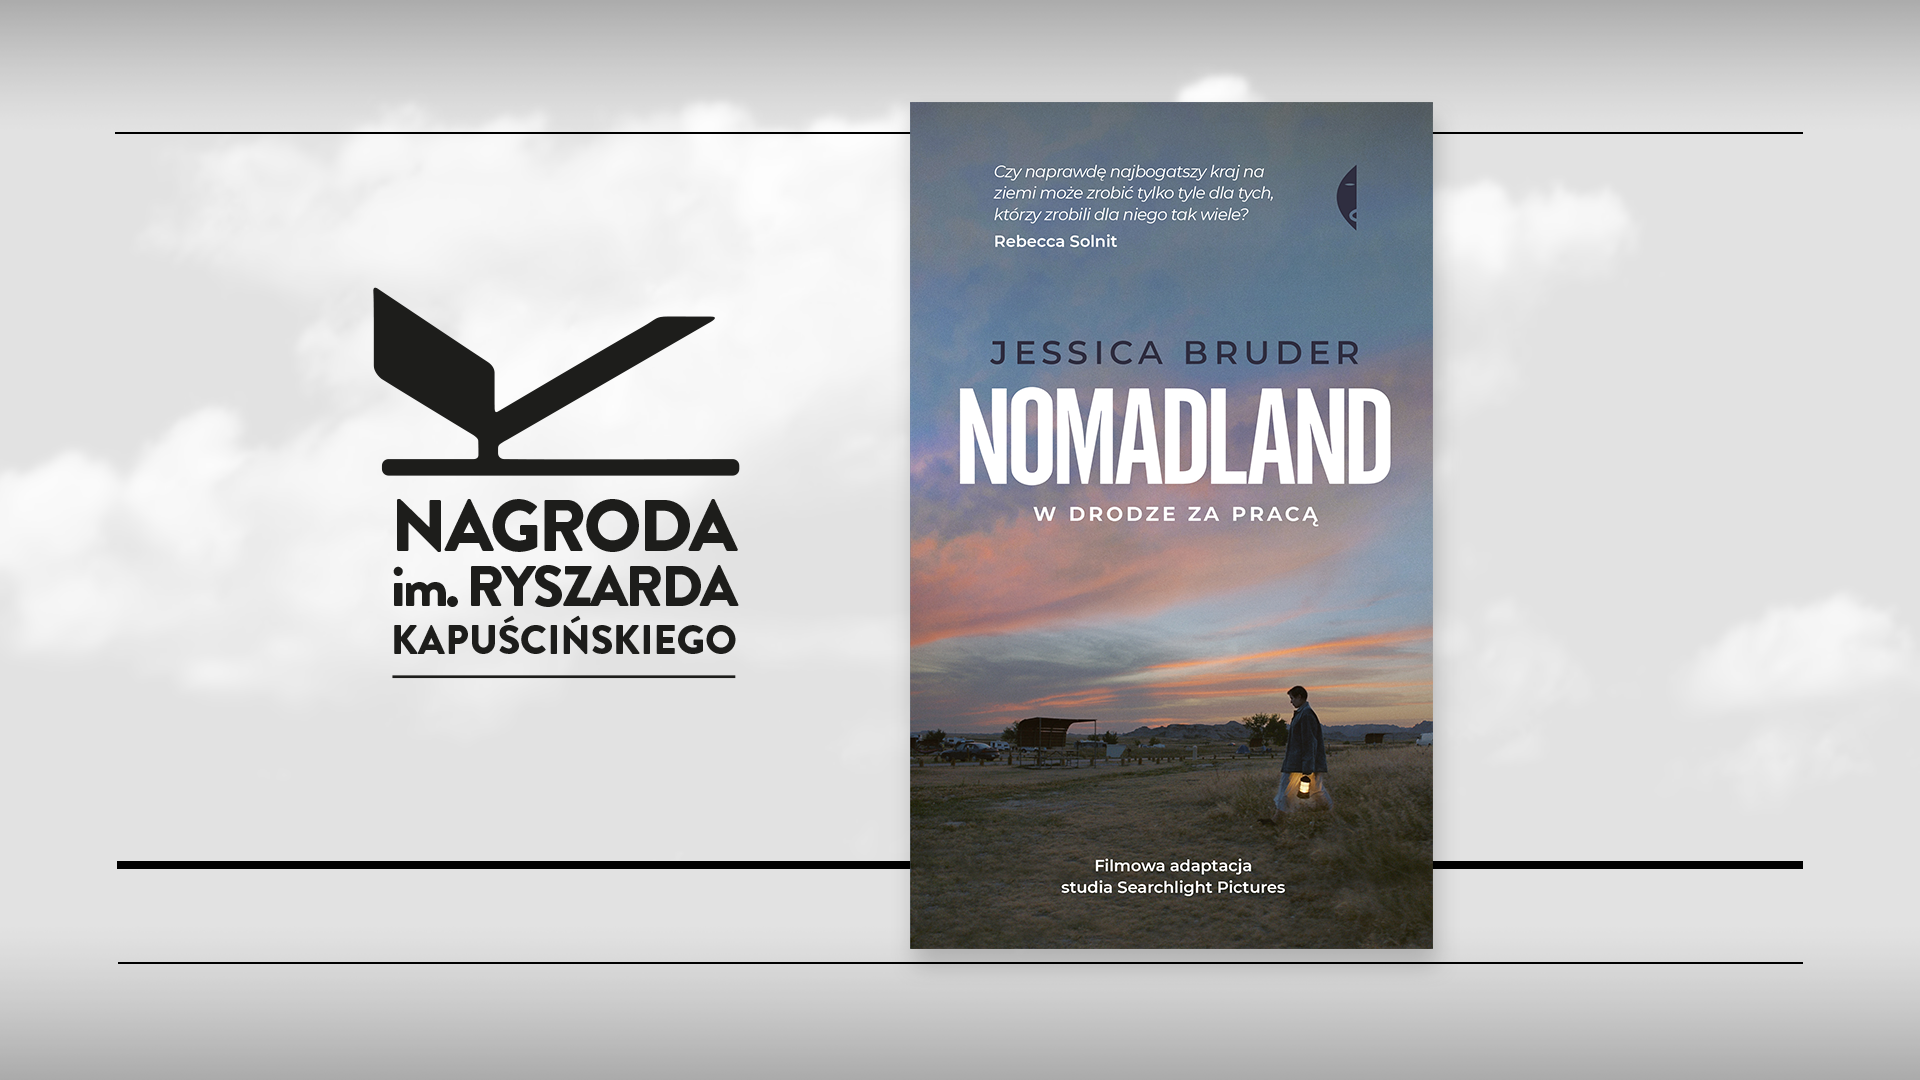 Najlepszy reportaż 2020 wybrany! Jessika Bruder, autorka „Nomadland. W drodze za pracą” z Nagrodą im. Ryszarda Kapuścińskiego